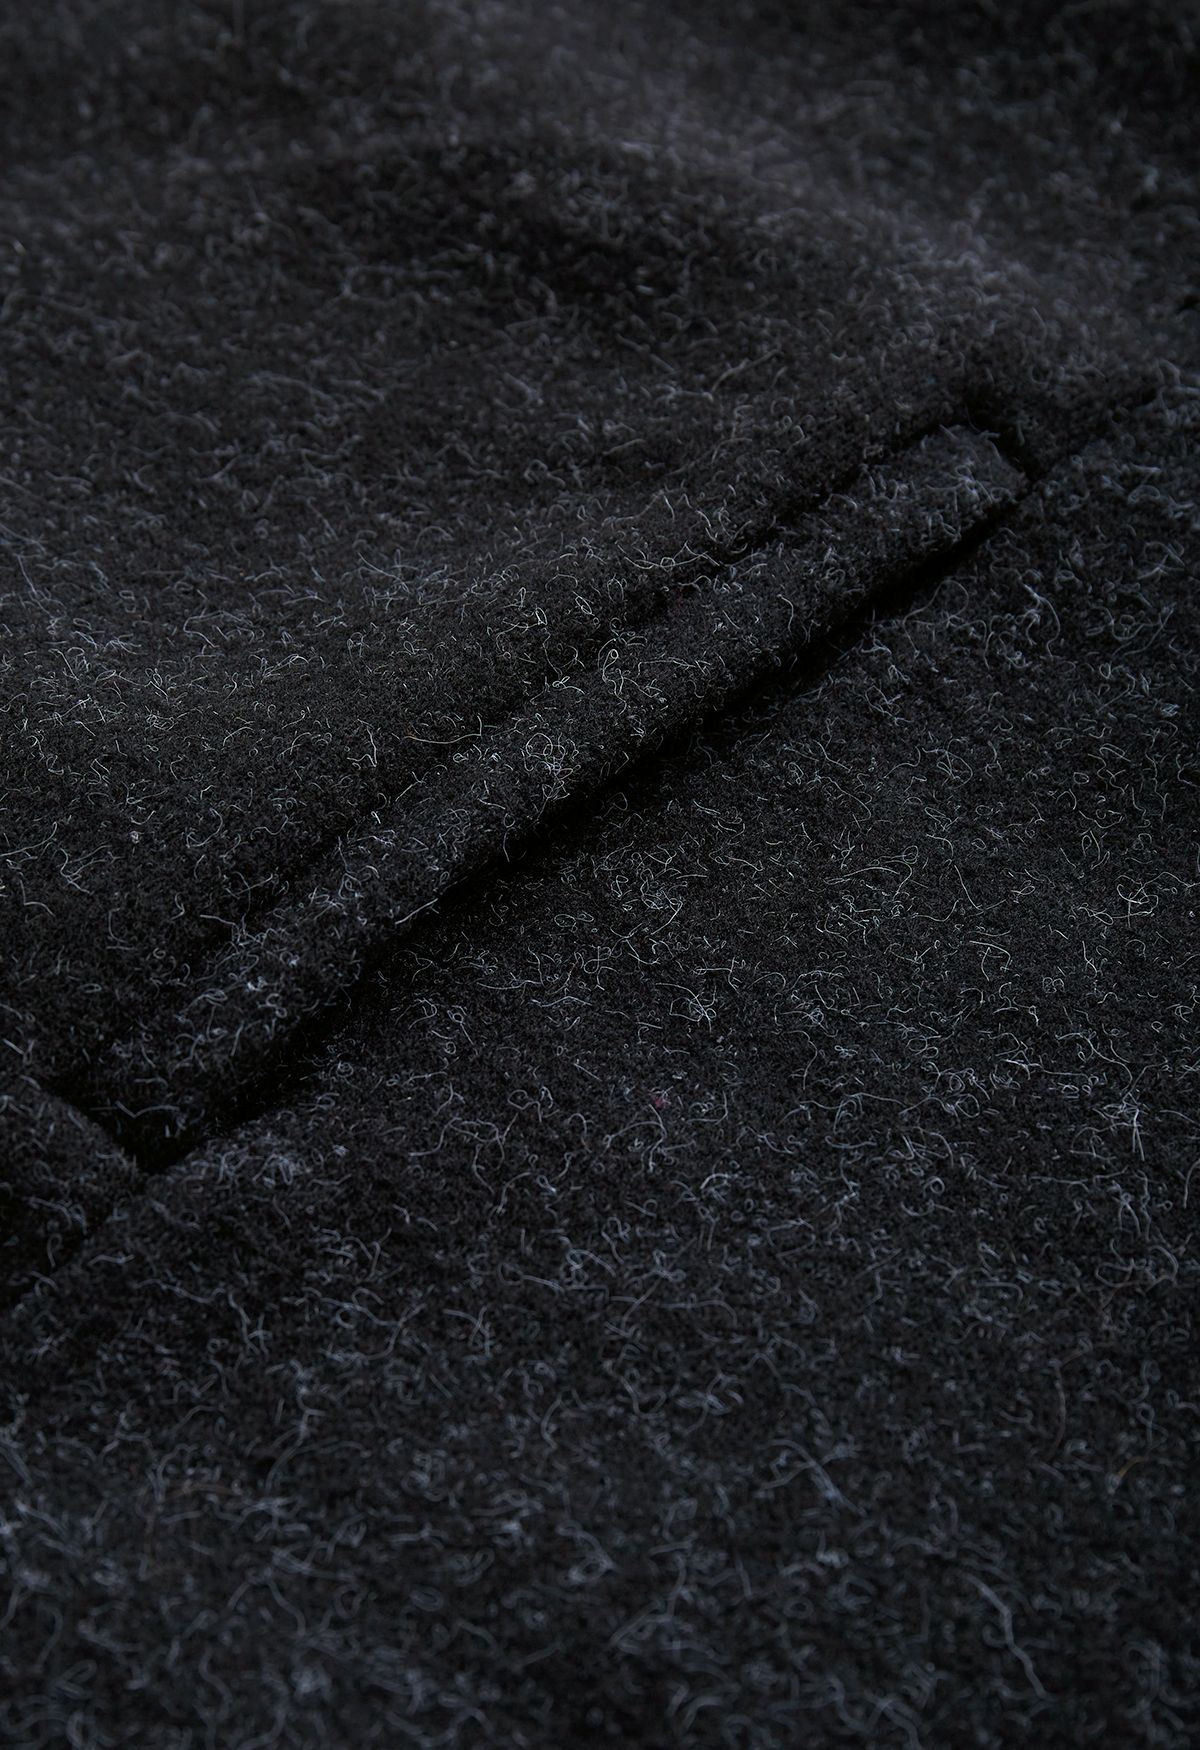 Poncho de piel sintética con lazo y lazo en negro